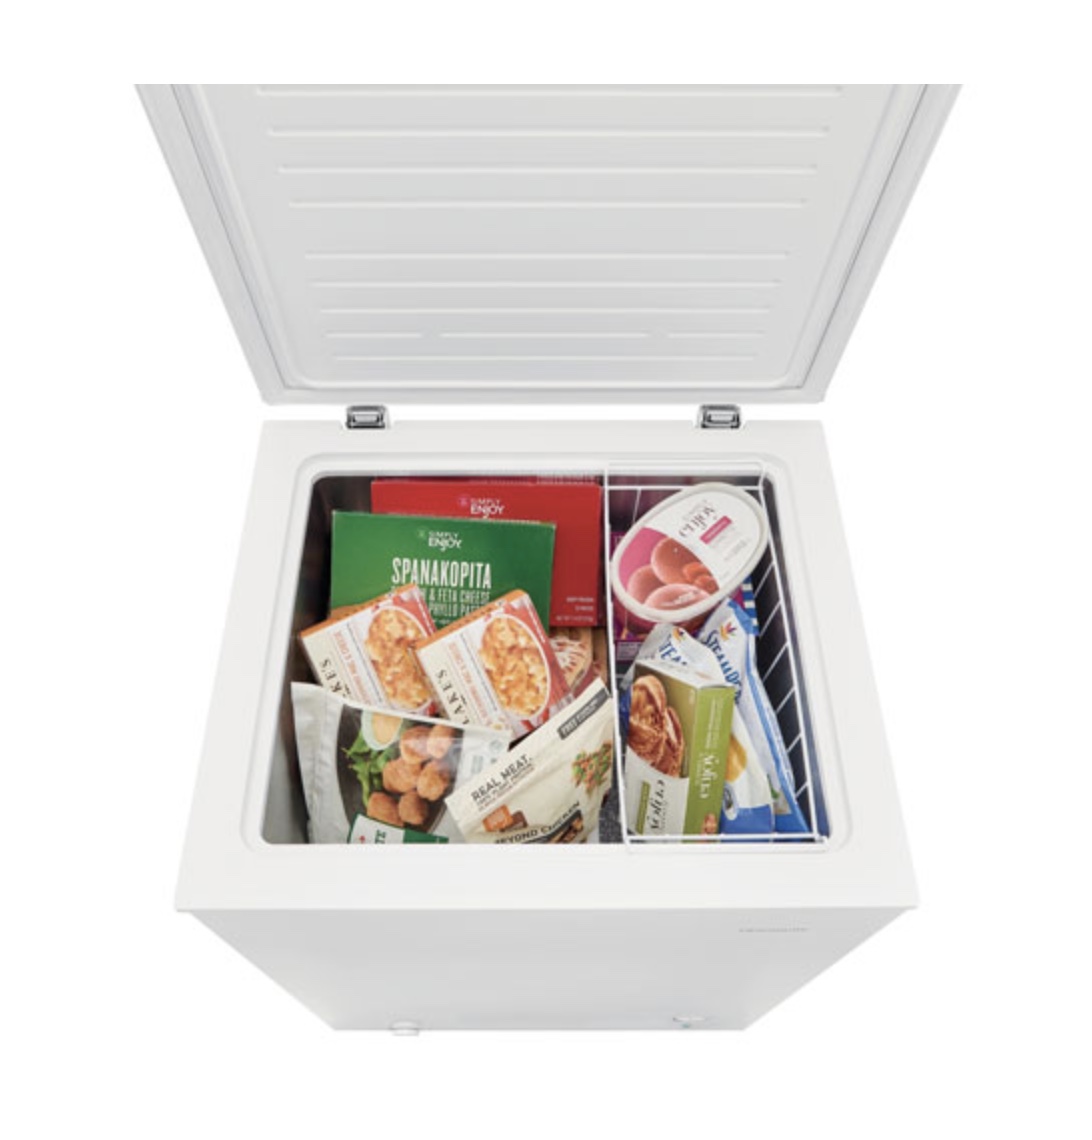 chest freezer for storing bulk food